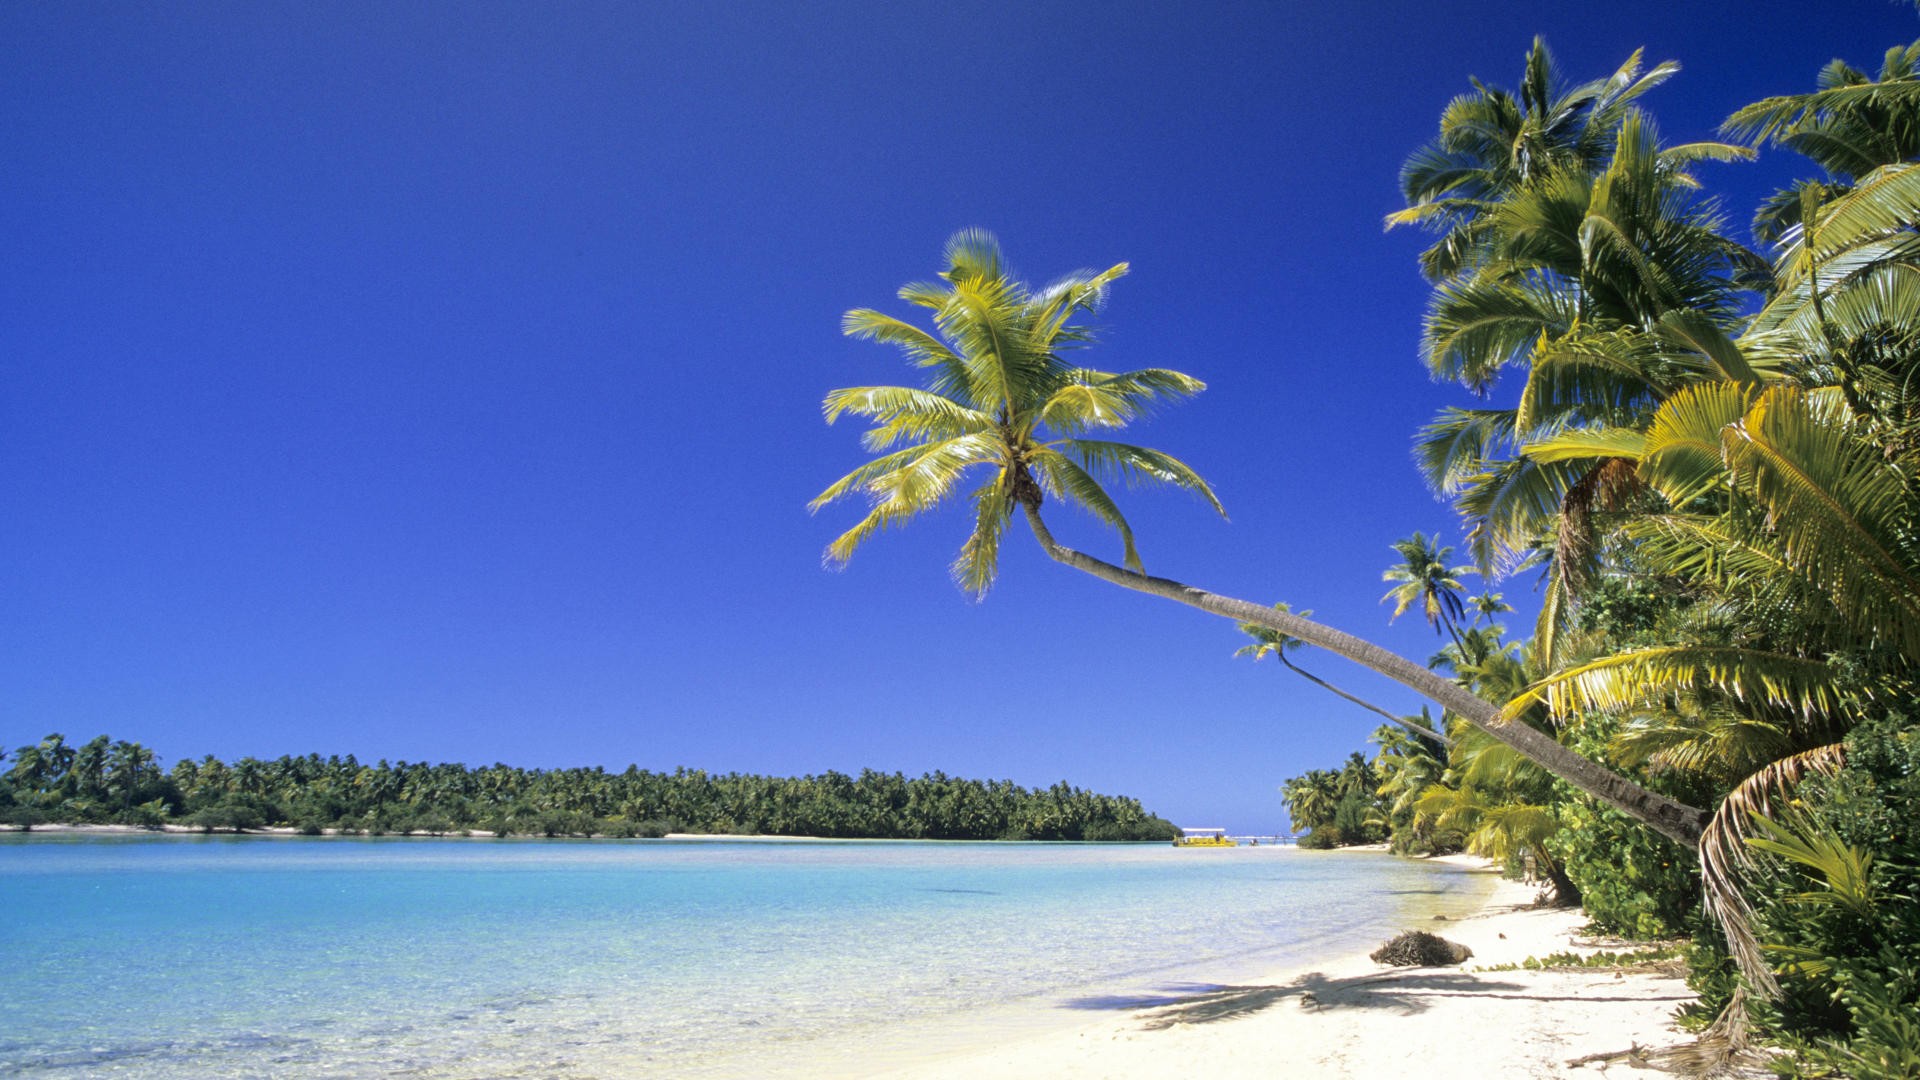 Солнце, песок, острова Кука, пальмовые деревья - обои на рабочий стол